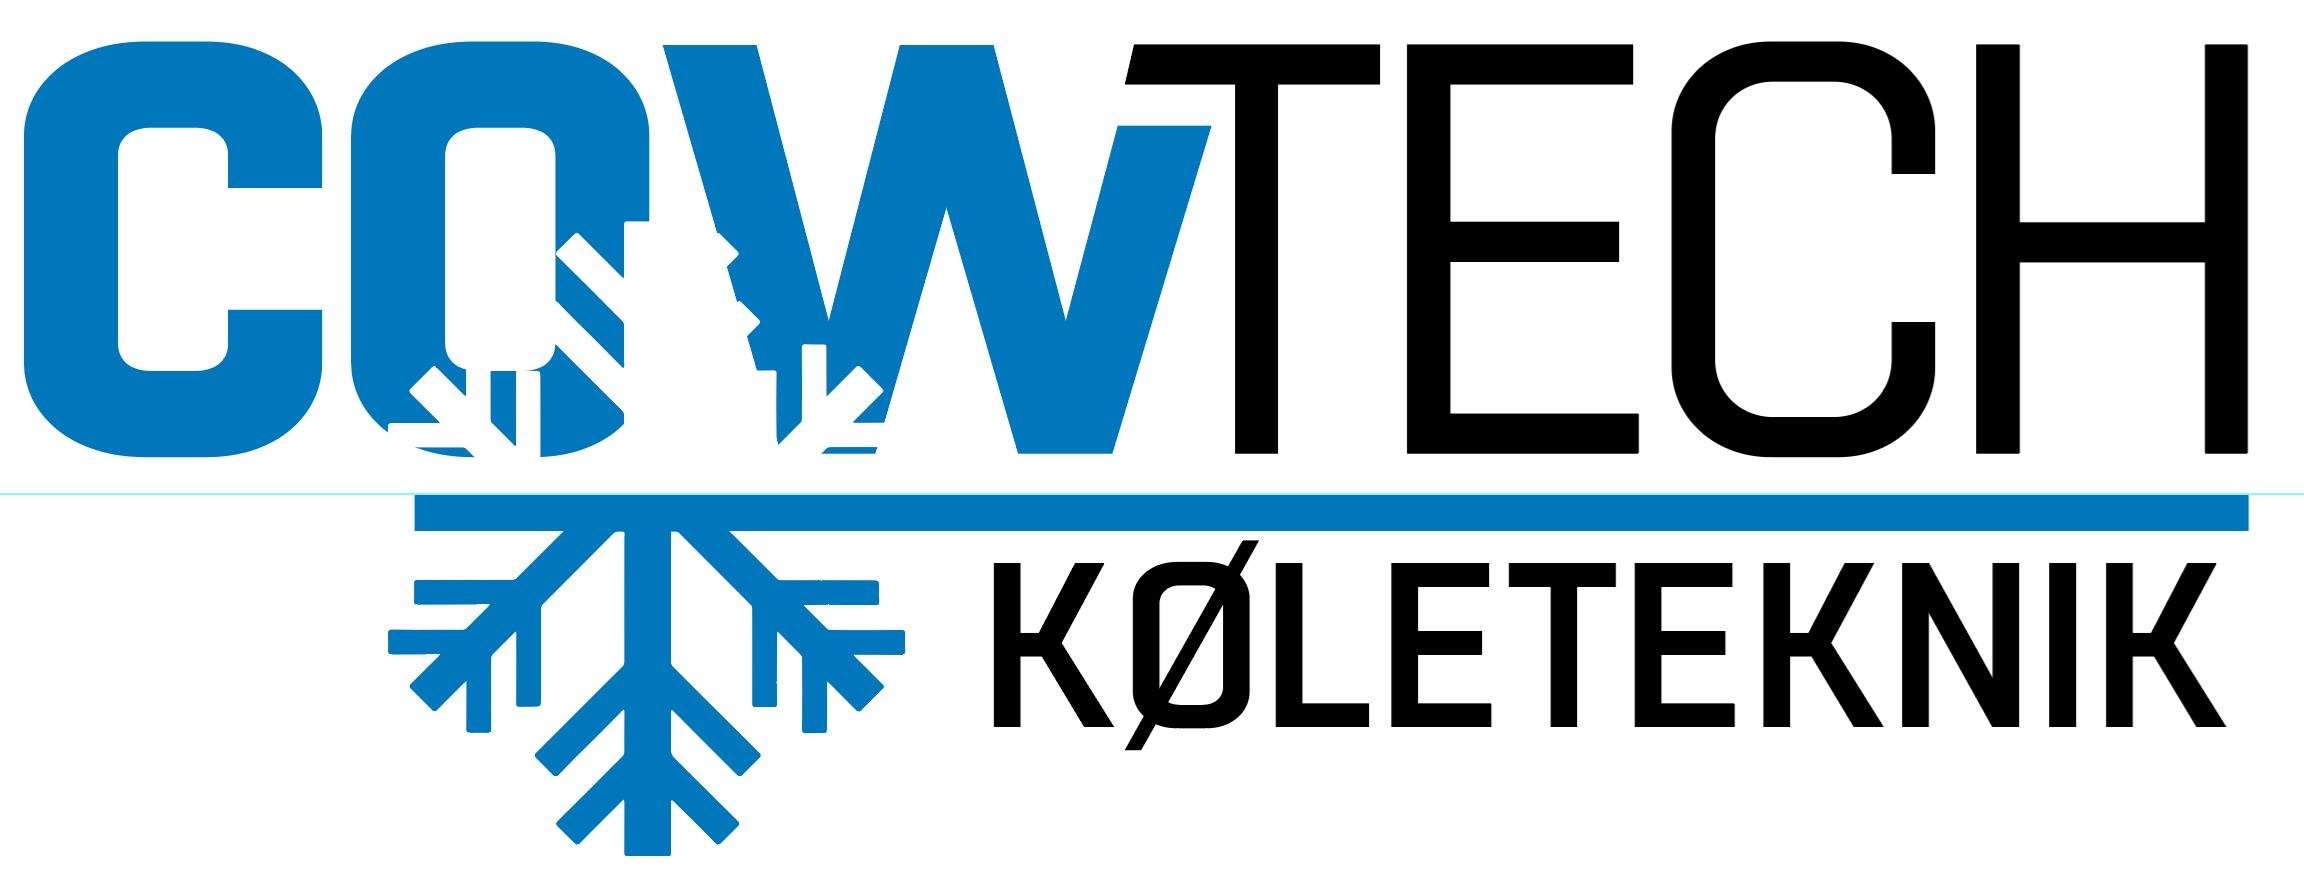 cowtech logo - køleteknik